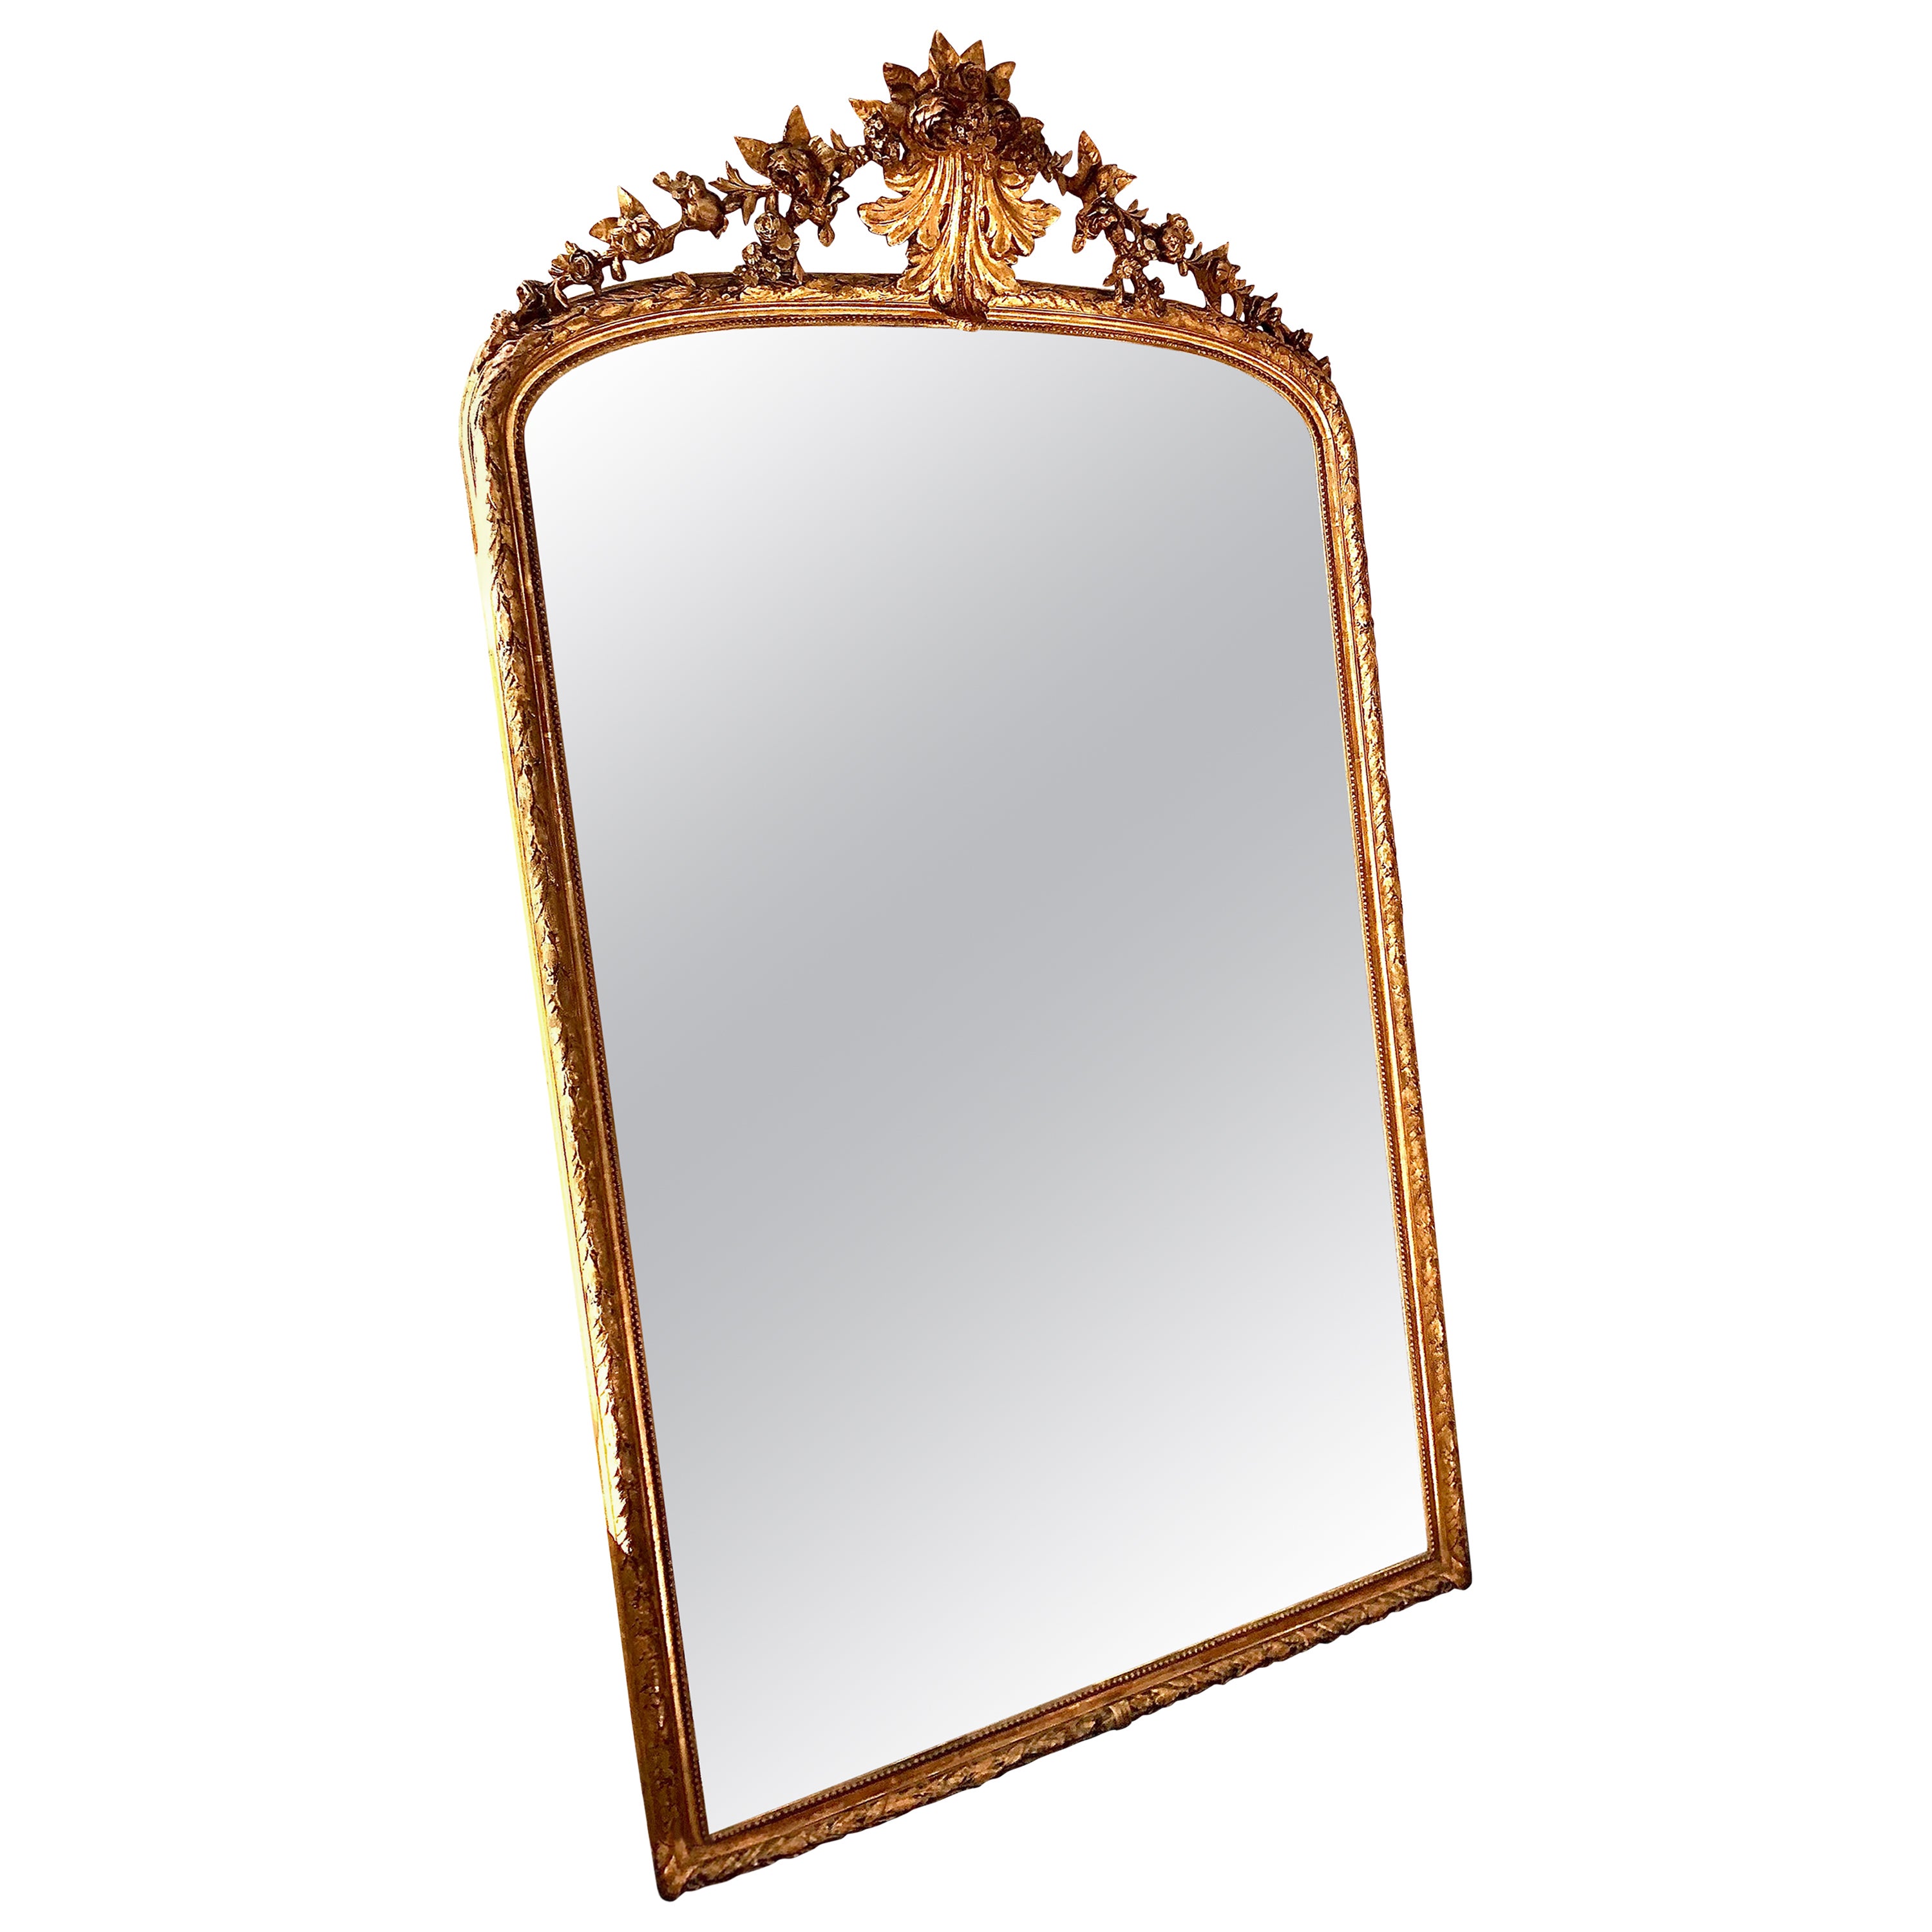 Grand miroir doré de style Louis XVI du 19e siècle